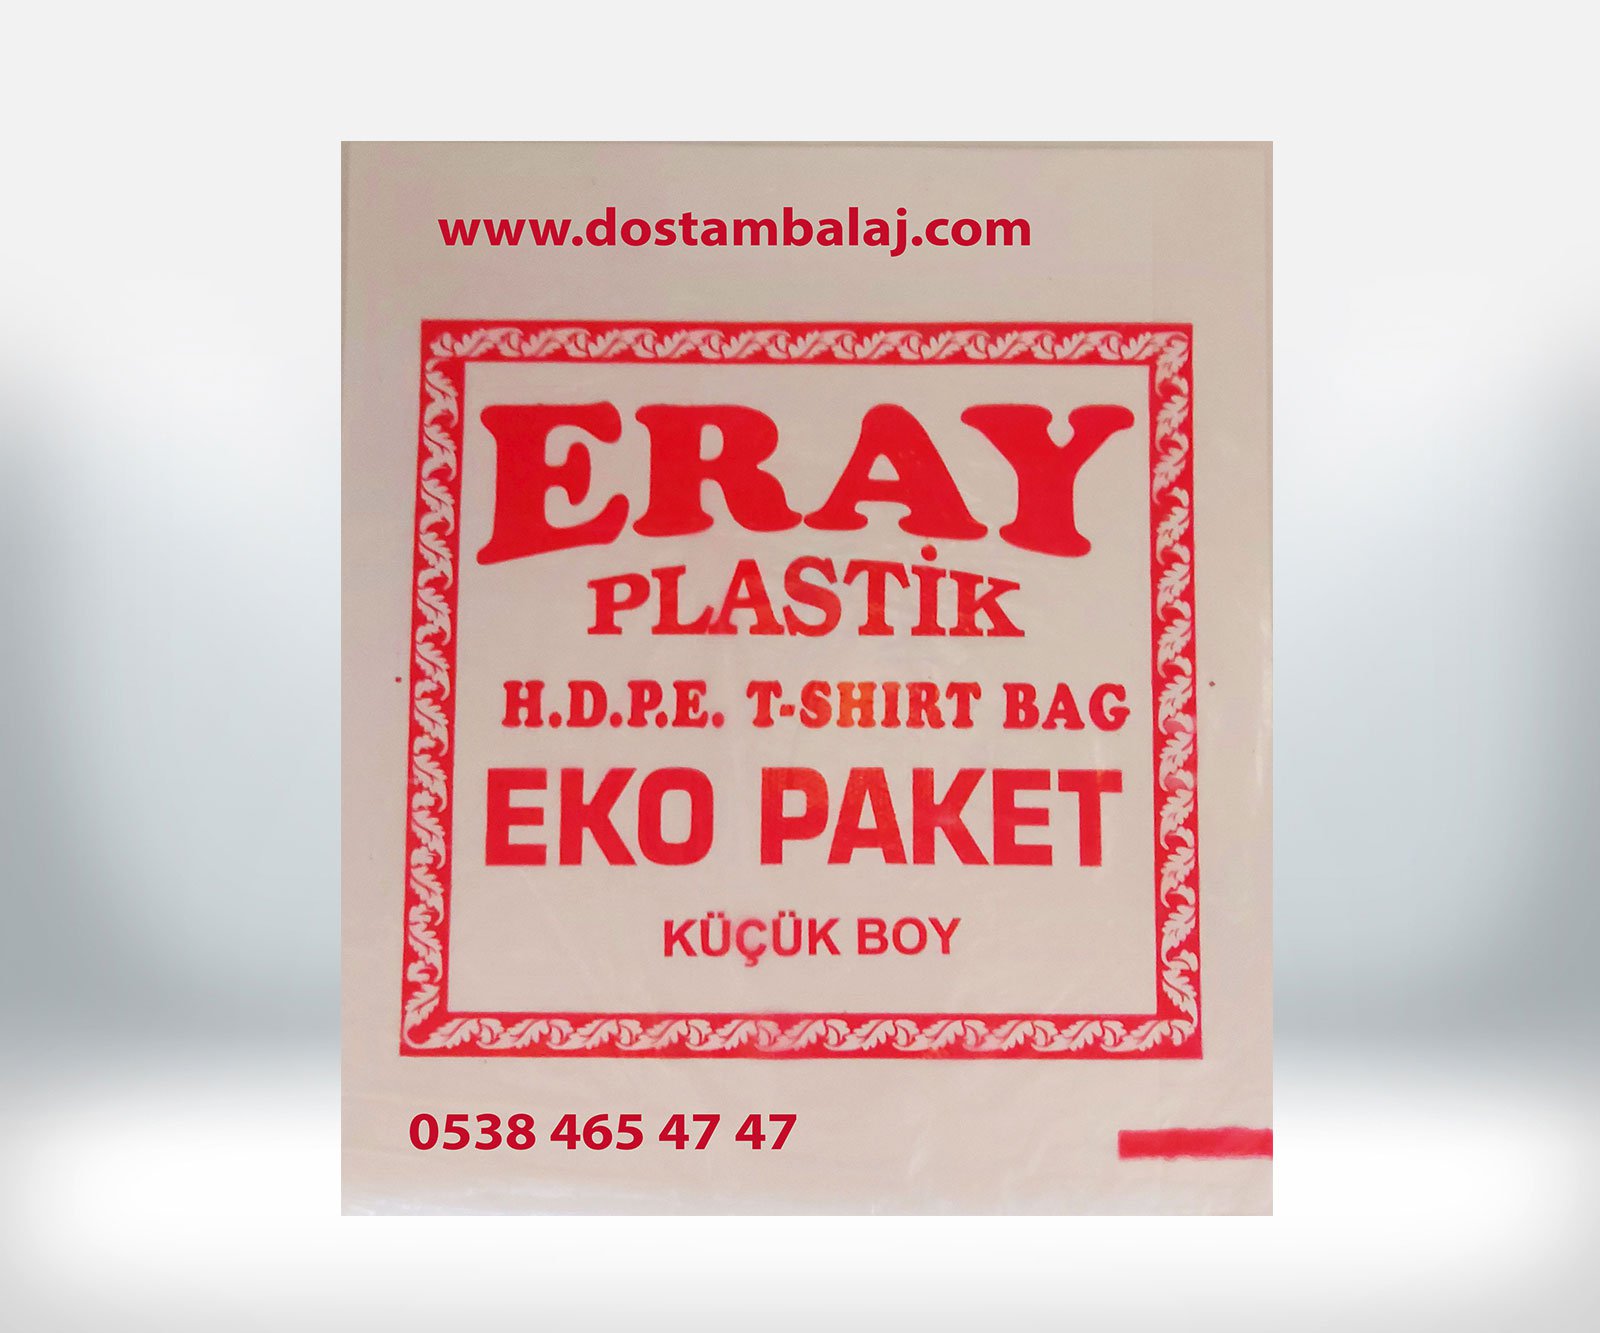 Eray K&uuml;&ccedil;&uuml;k Boy Eko Paket